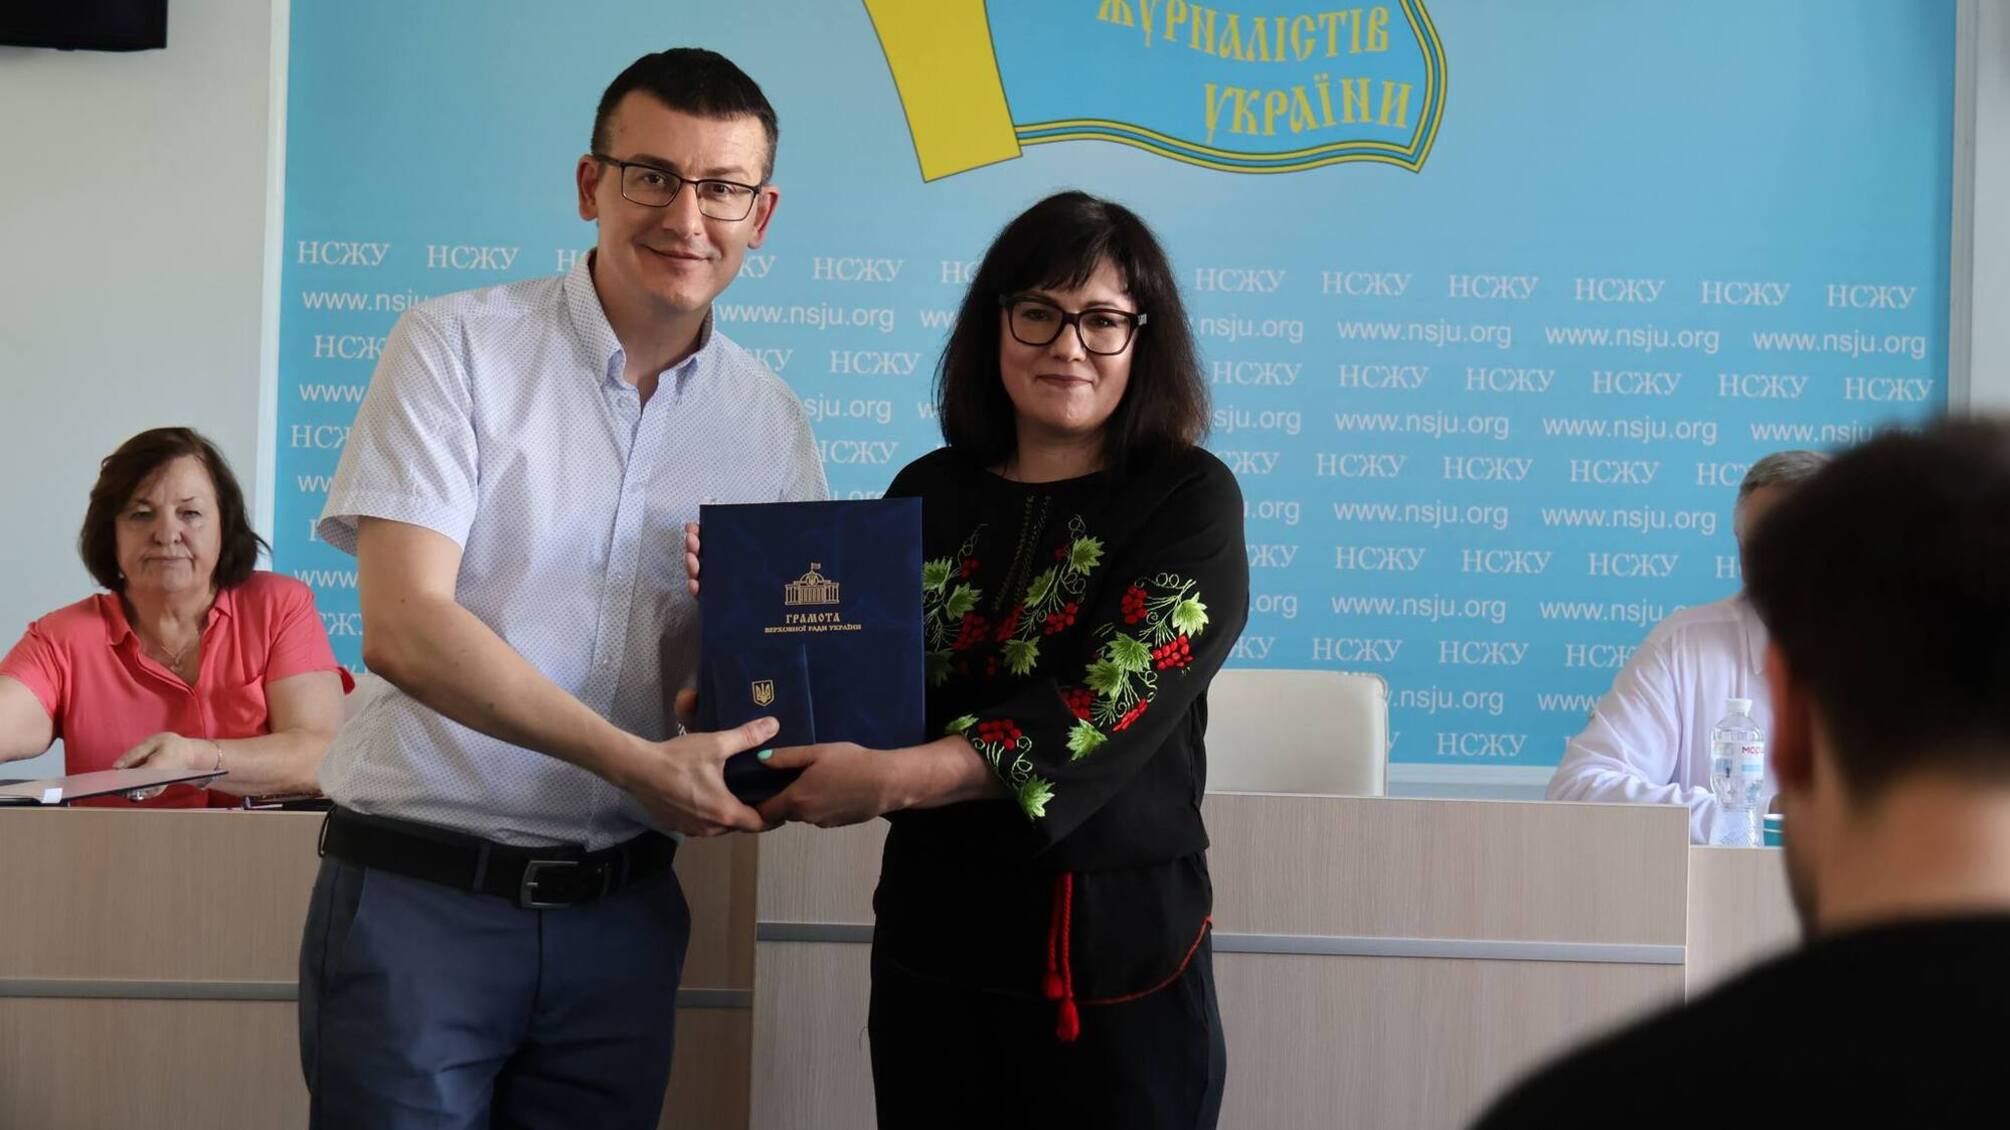 Награда от Союза журналистов Украины: признание работы Татьяны Высоцкой